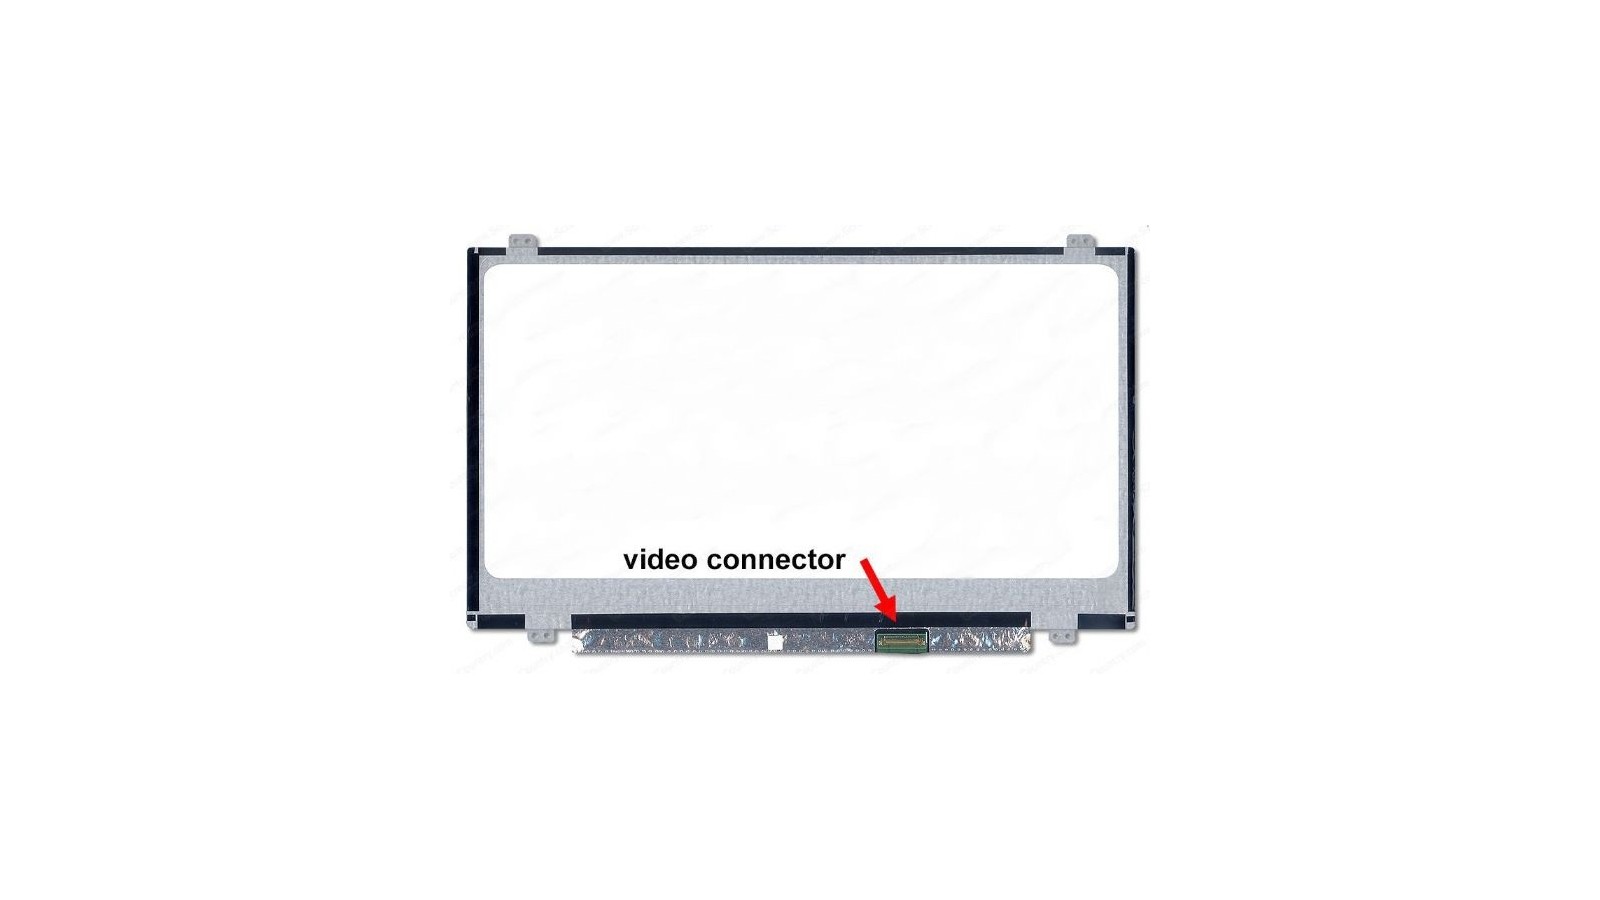 Display LCD Schermo 14.0 LED compatibile con Hp 826403-001